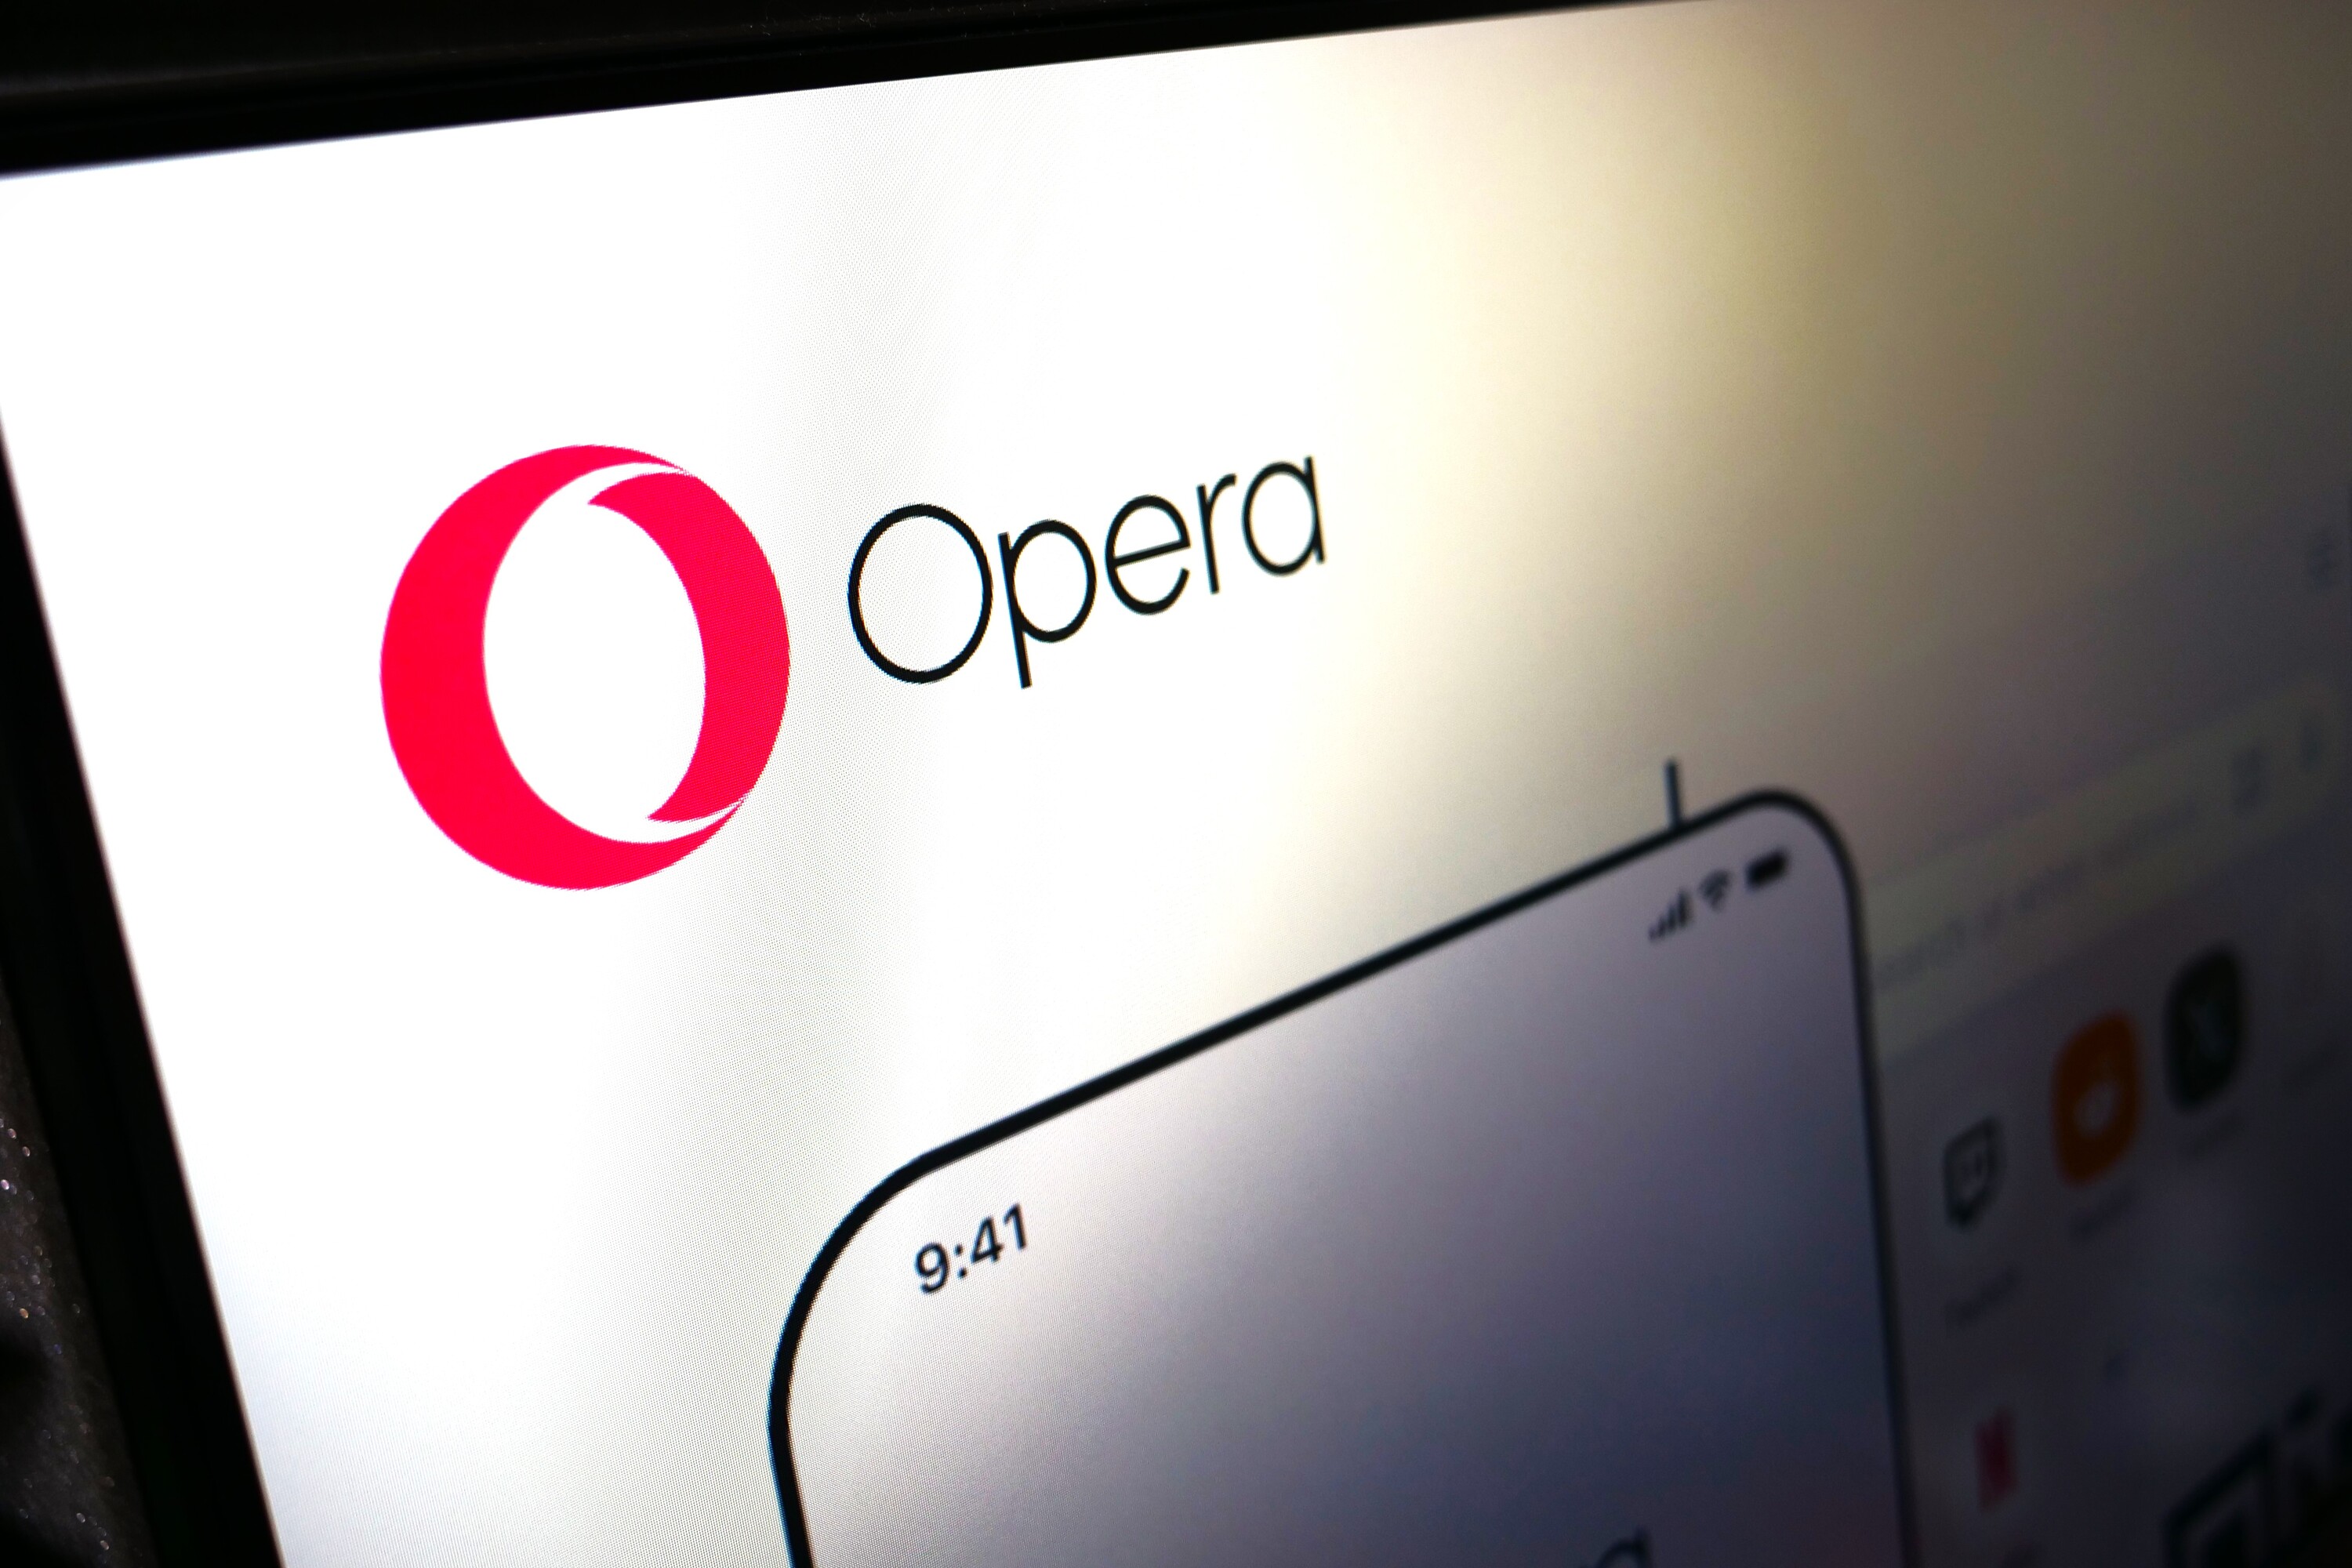 Opera pour Android intègre désormais la génération d'images et un flux de podcasts par IA